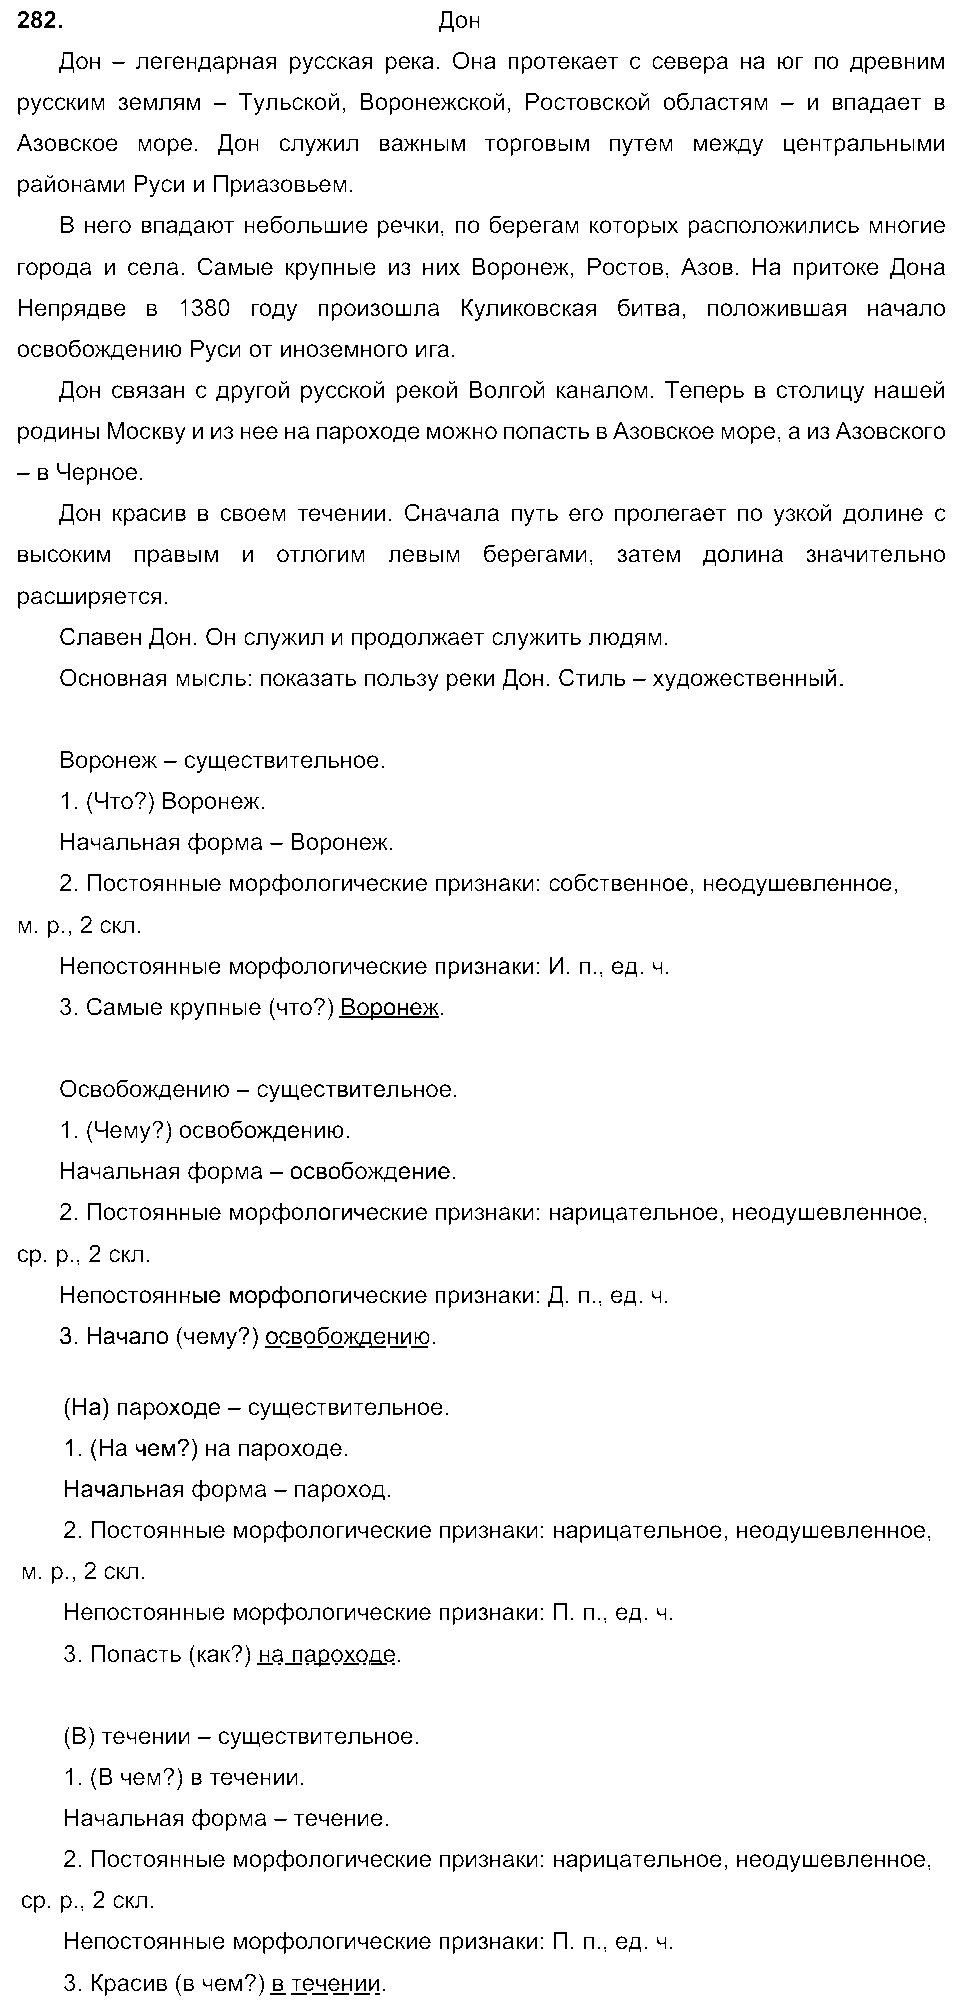 ГДЗ Русский язык 6 класс - 282